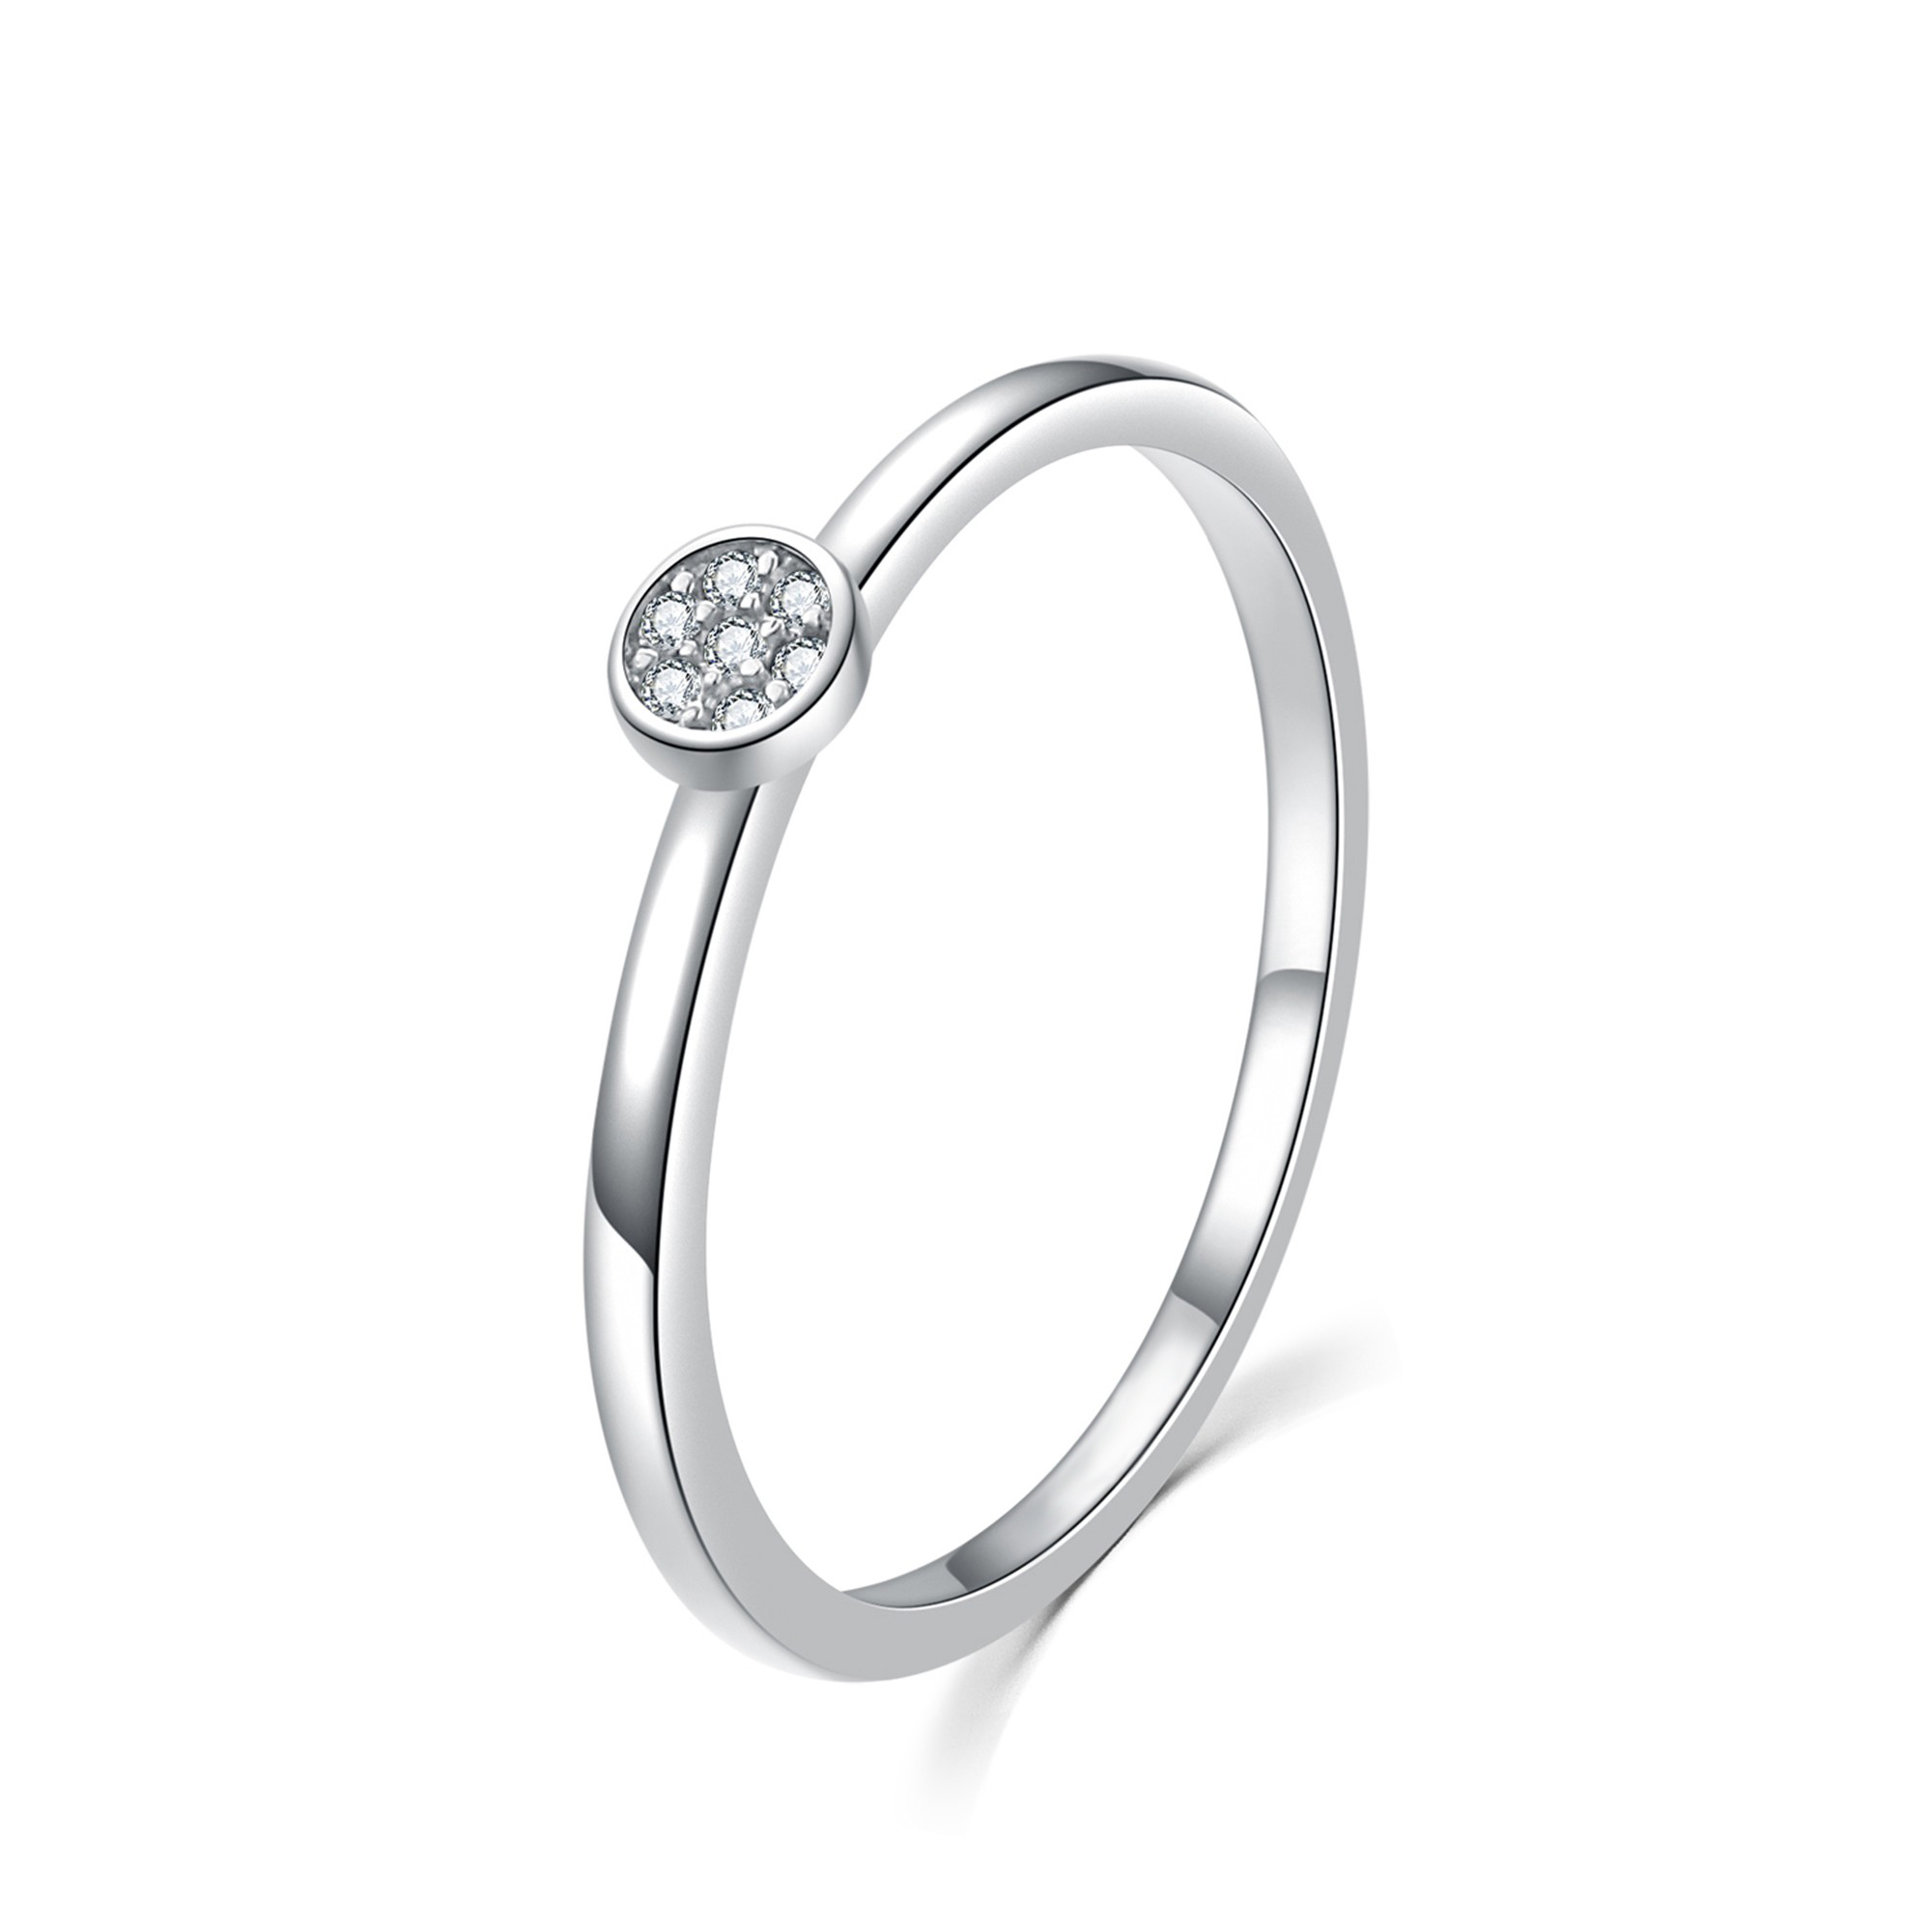 MOISS Moiss stříbrný prsten s bílými zirkony BEAUTY R0002053 Velikost 54 mm R0002058